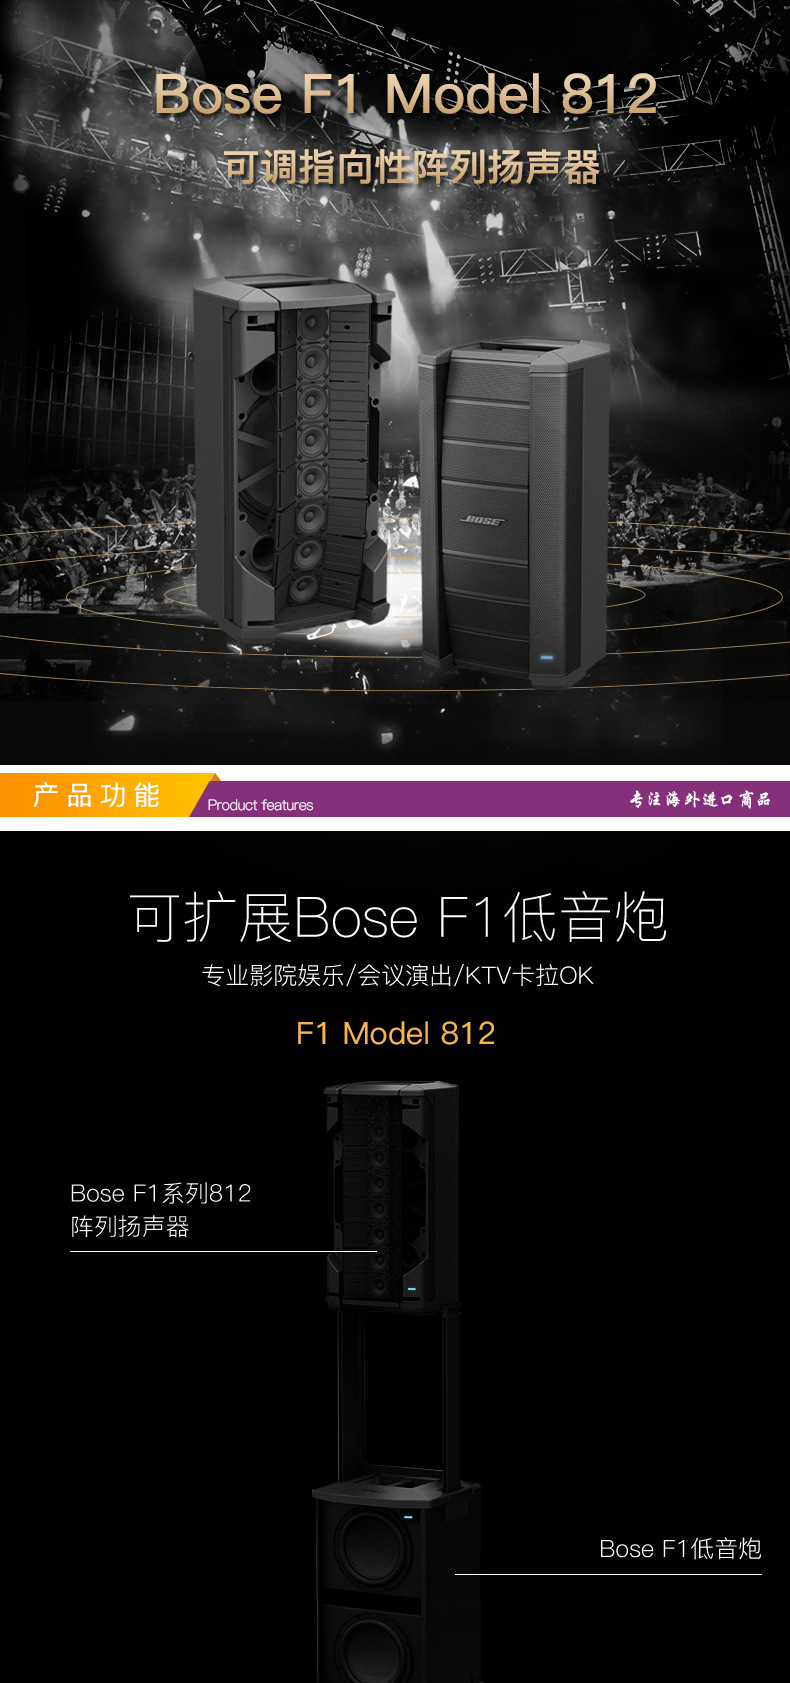 博士bose f1 model 812影院娱乐专业音响会议演出蓝牙音箱可调指向性